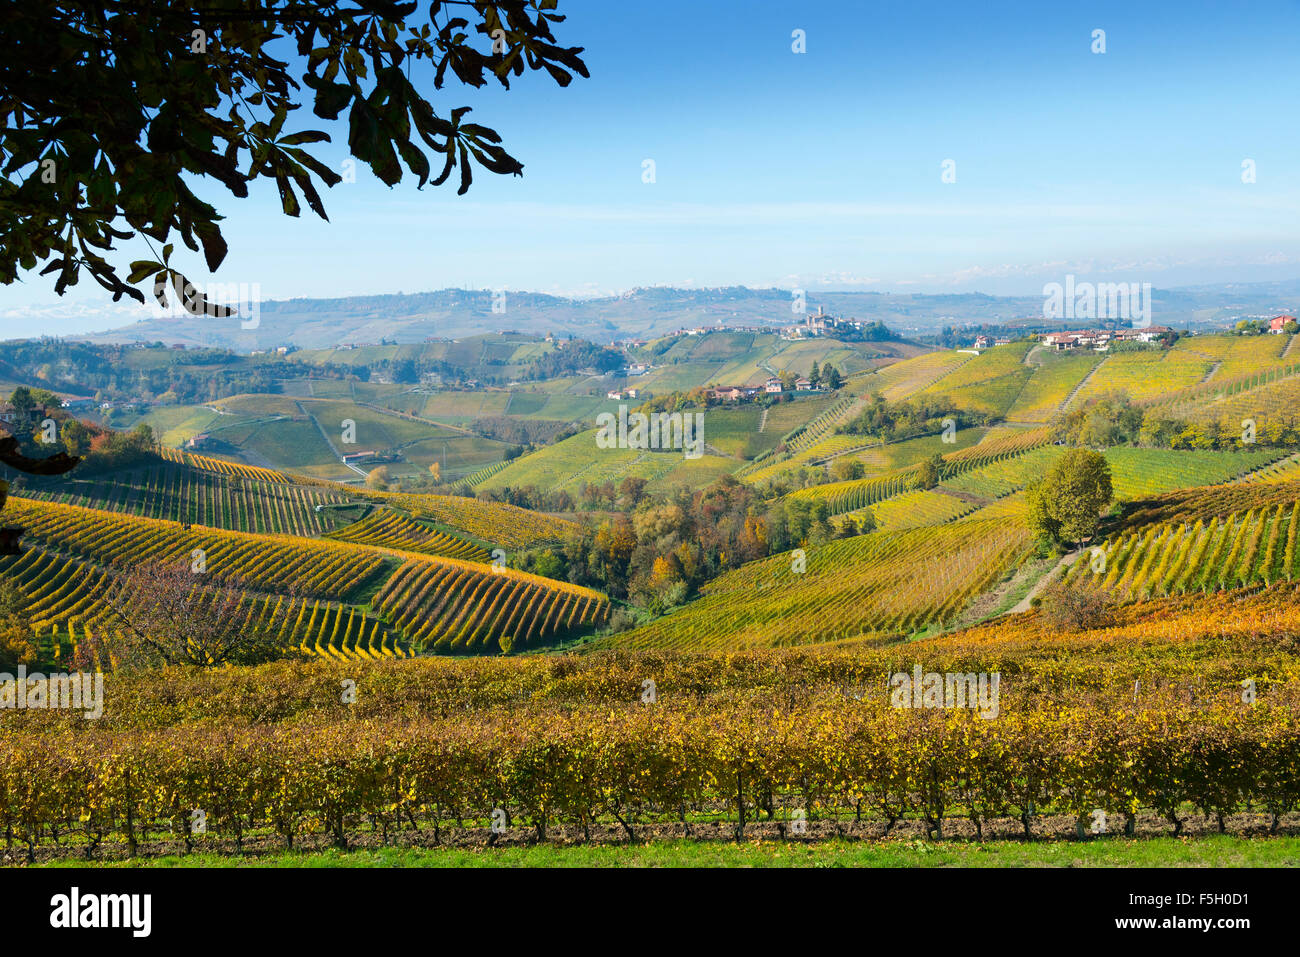 Il Piemonte, Italia, panorama di vigneti del Piemonte: Langhe-Roero e Monferrato nella lista del Patrimonio Mondiale dell'UNESCO. Foto Stock